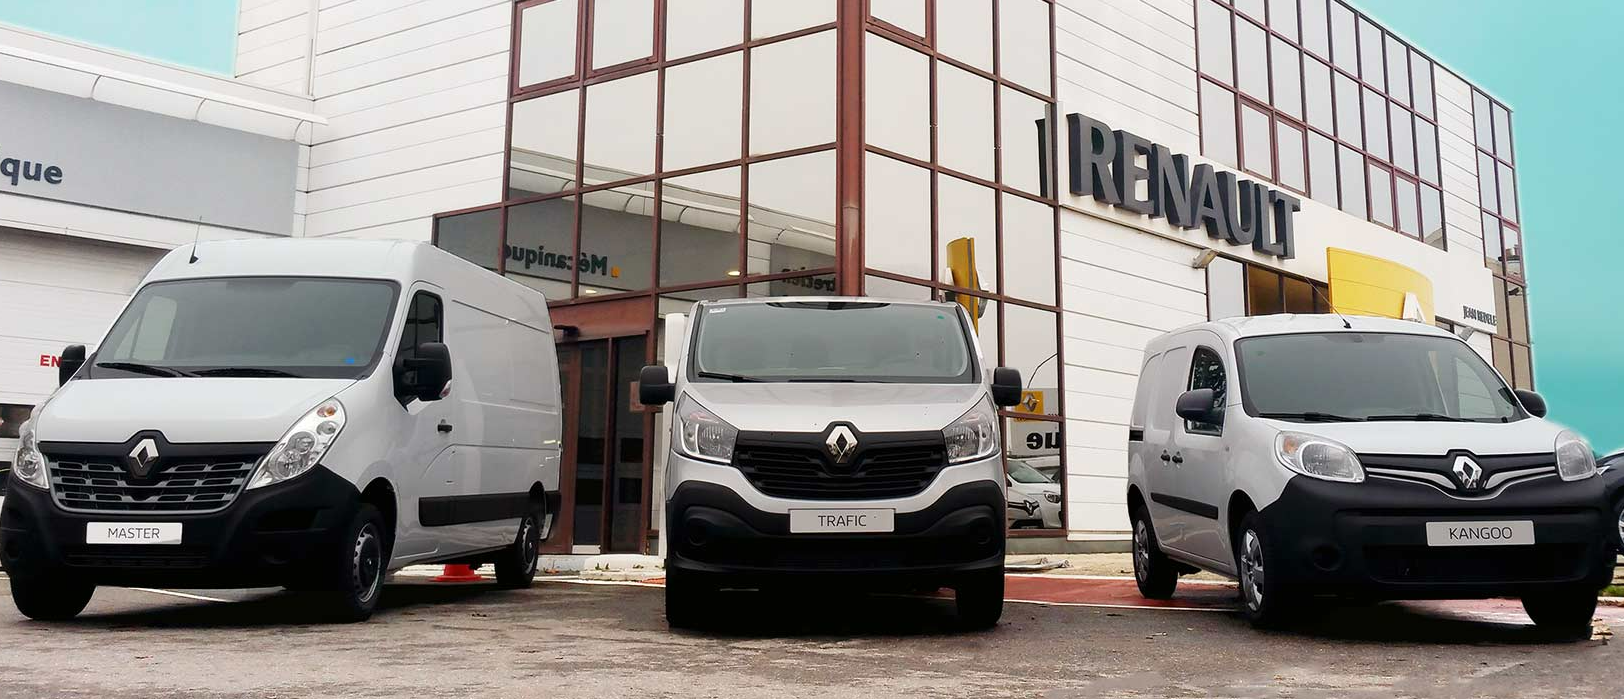 Gamme de véhicules utilitaires Renault